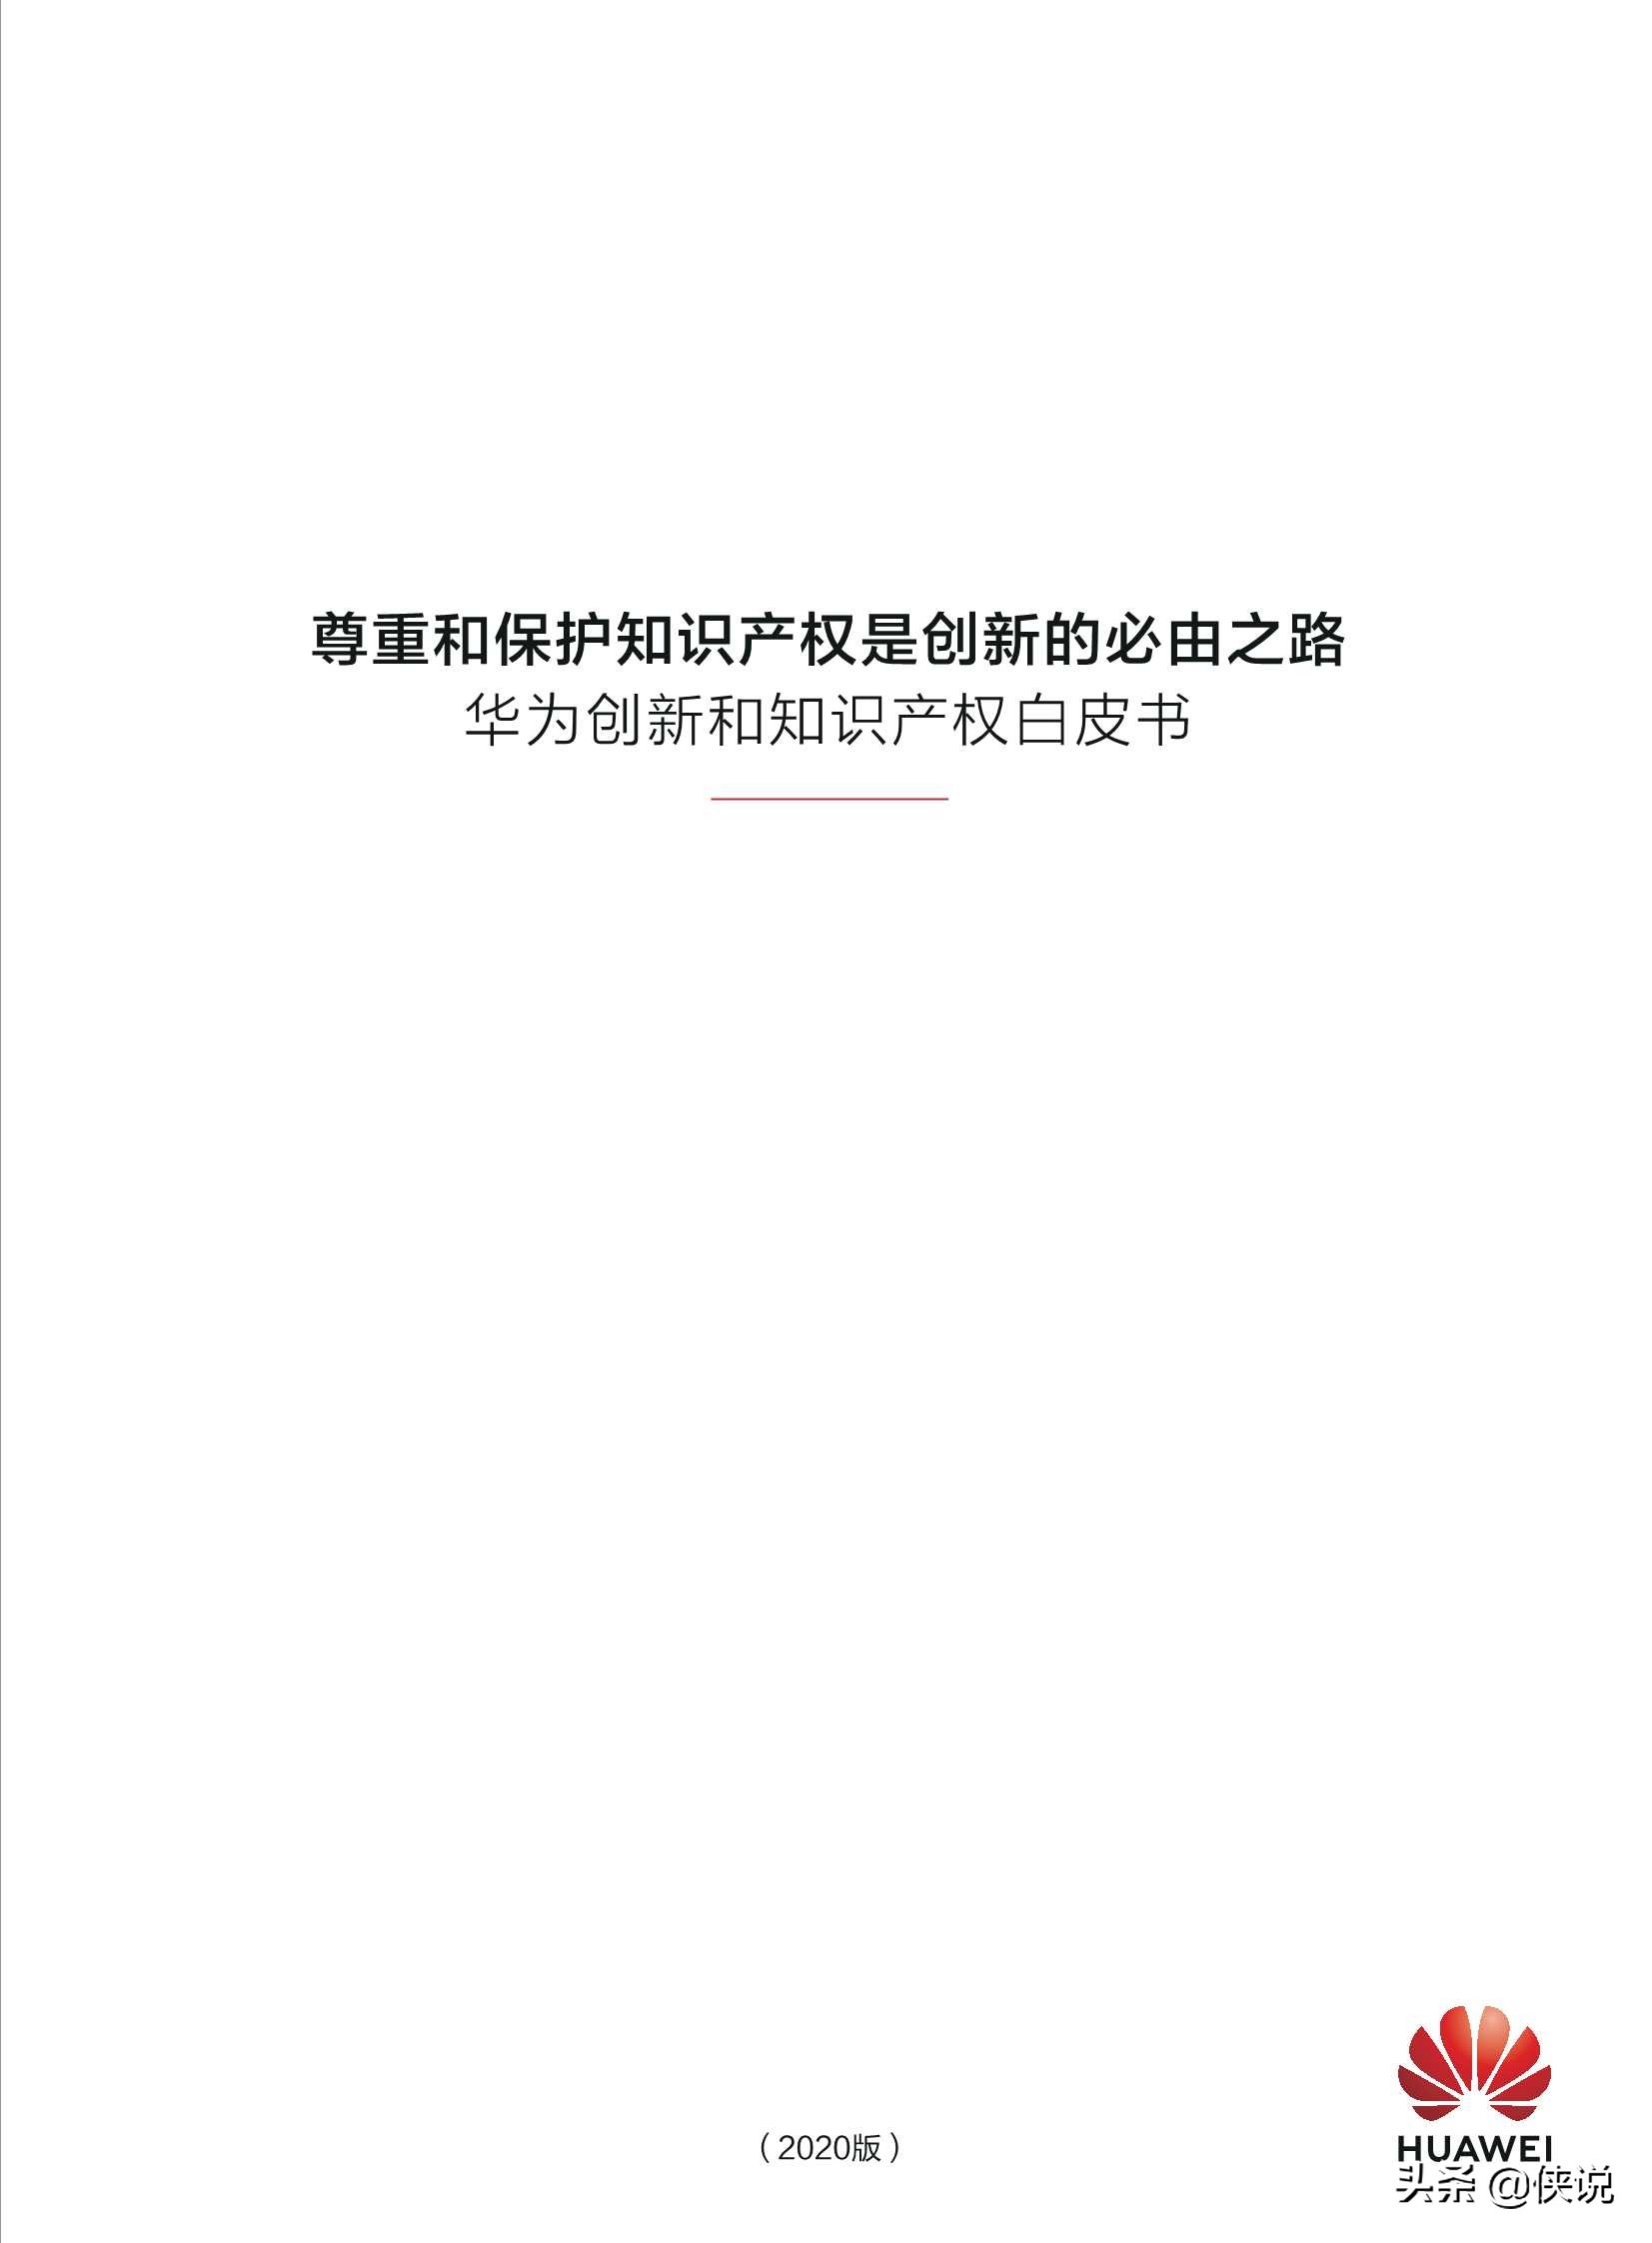 华为创新和知识产权白皮书2020